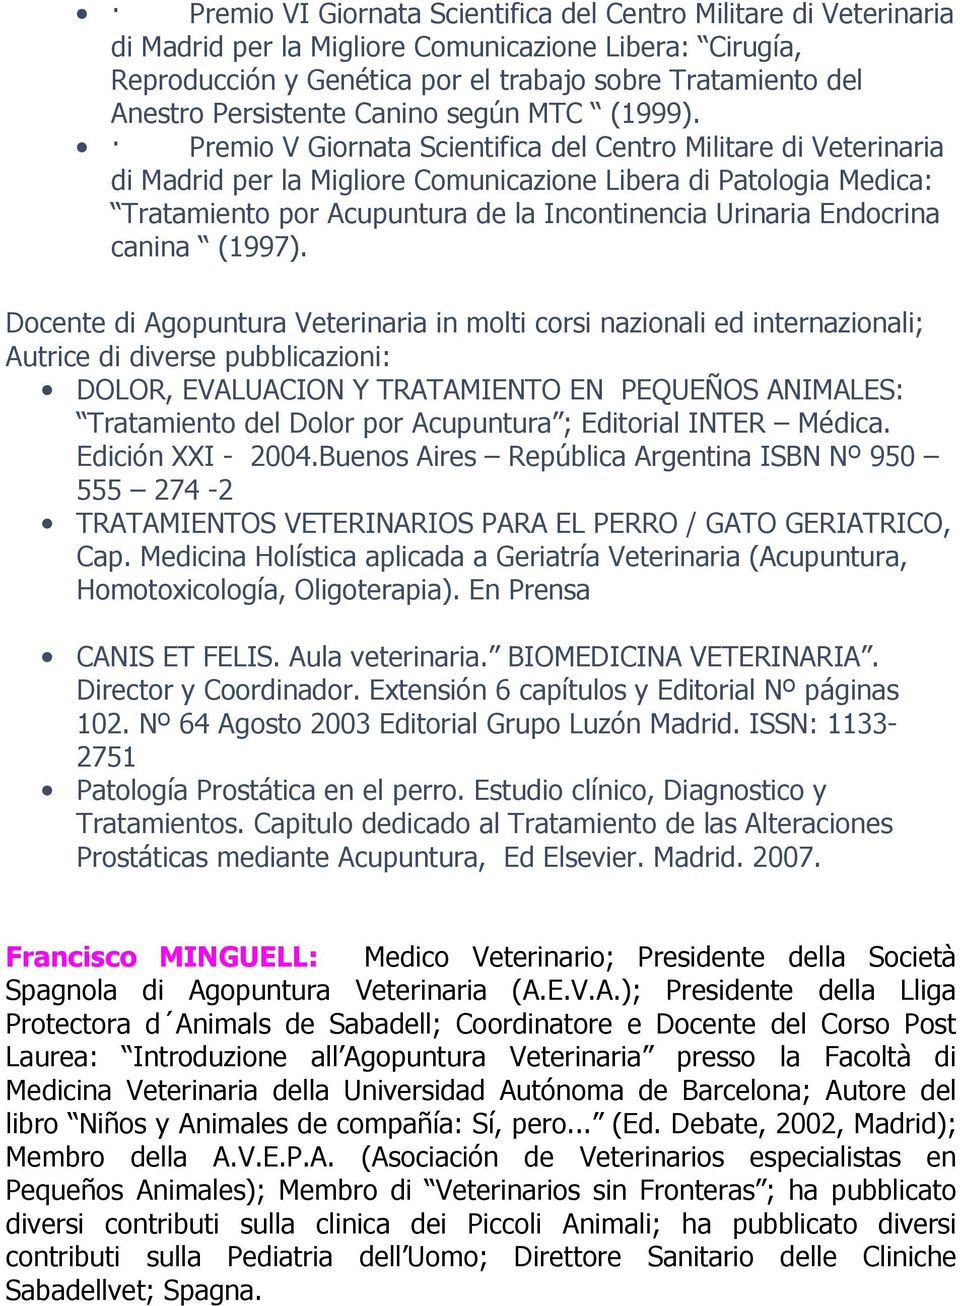 Premio V Giornata Scientifica del Centro Militare di Veterinaria di Madrid per la Migliore Comunicazione Libera di Patologia Medica: Tratamiento por Acupuntura de la Incontinencia Urinaria Endocrina